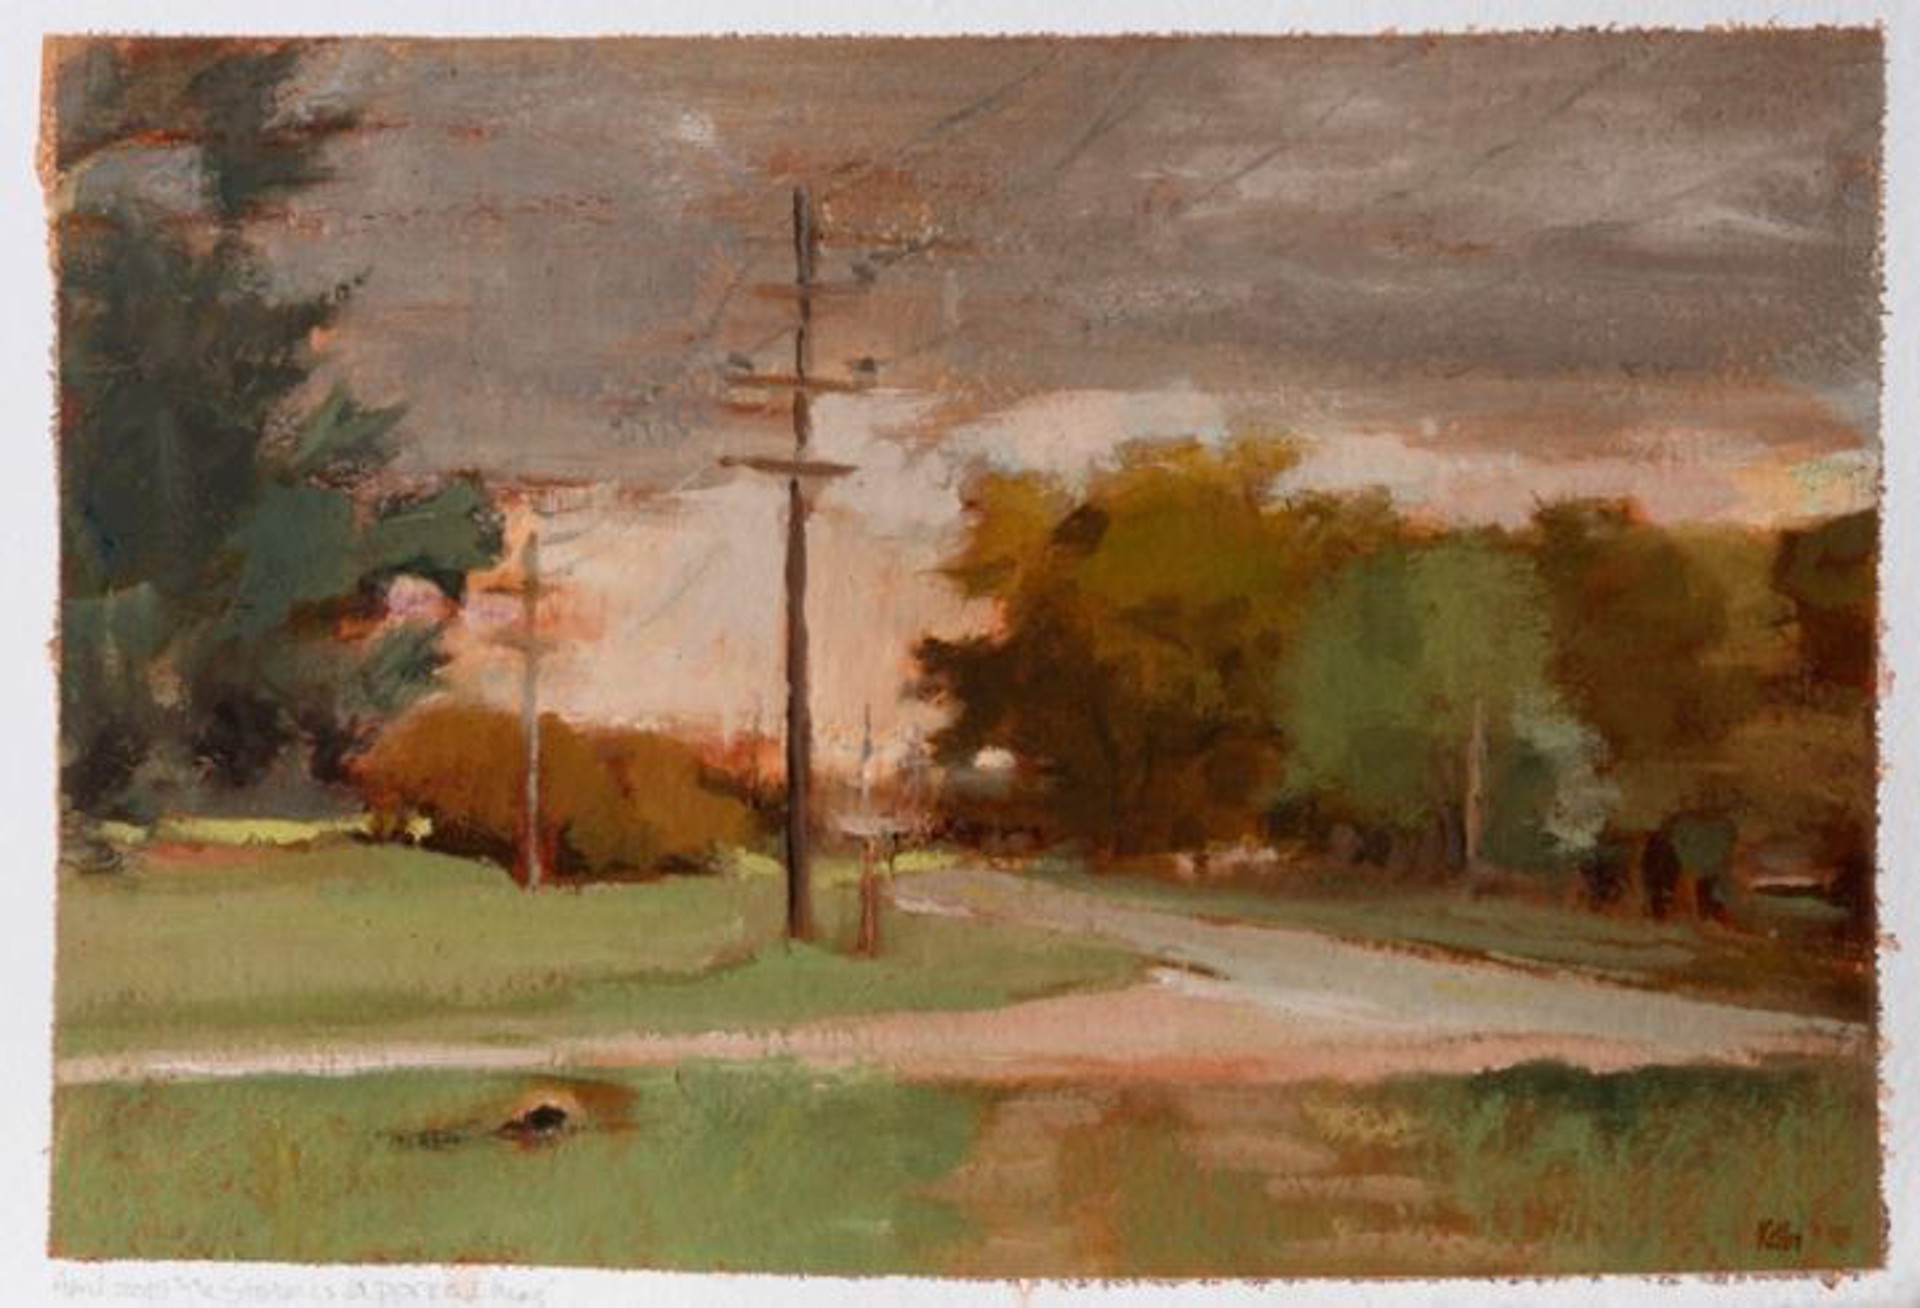 A Storm Approaching by Kathryn Keller